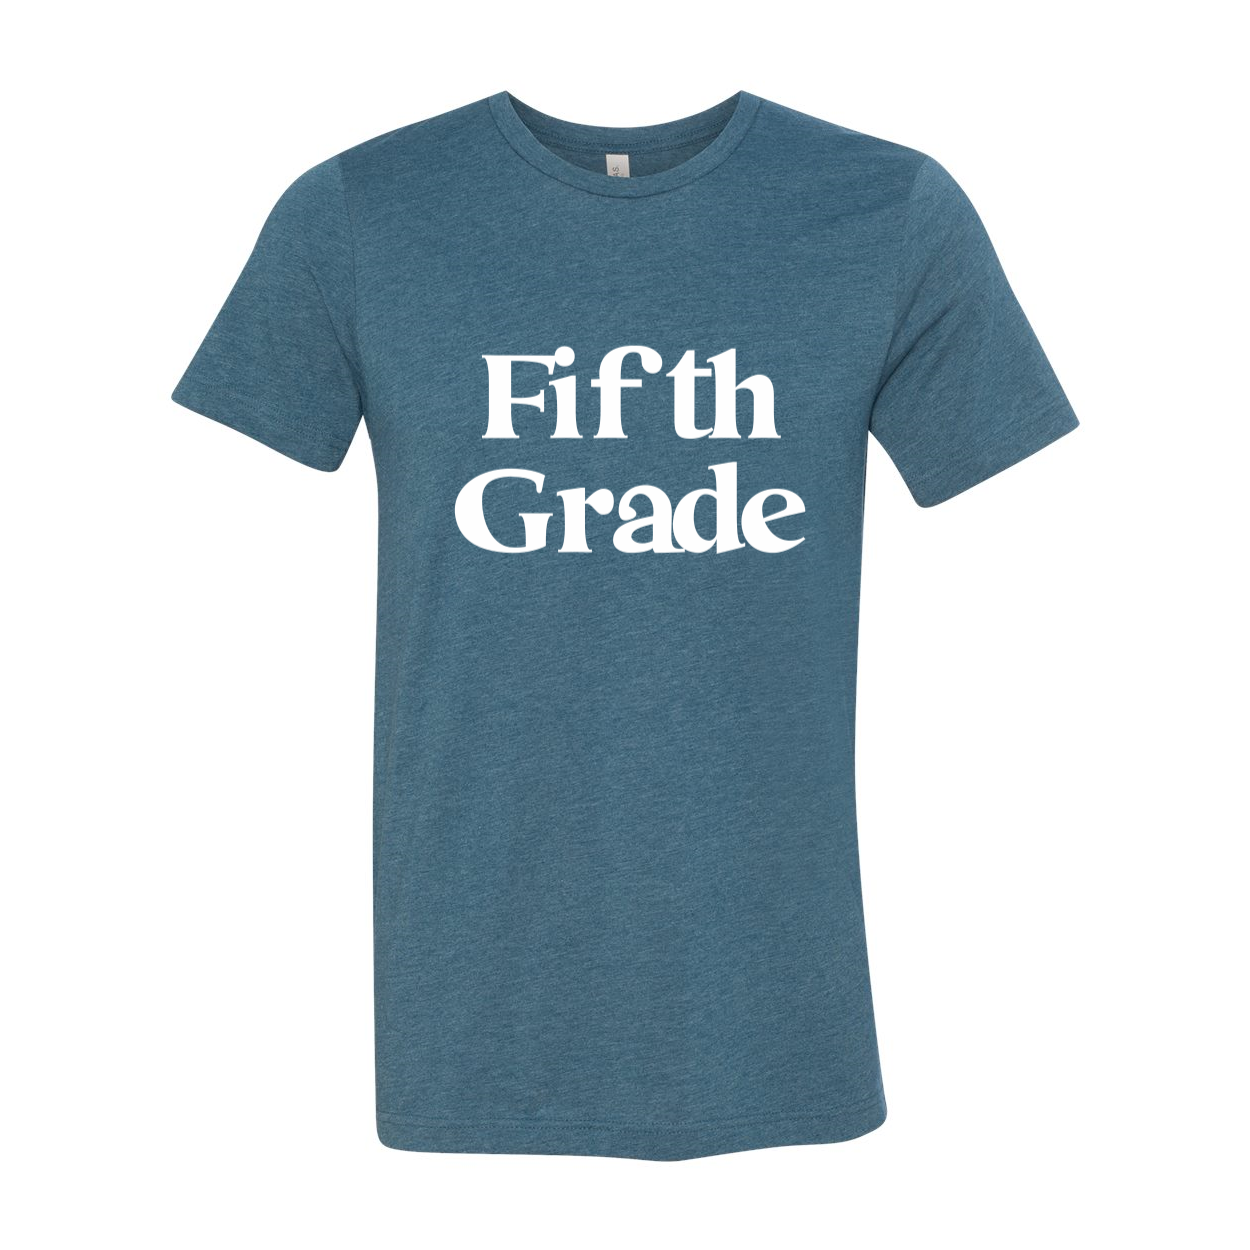 Fifth Grade Soft Shirt